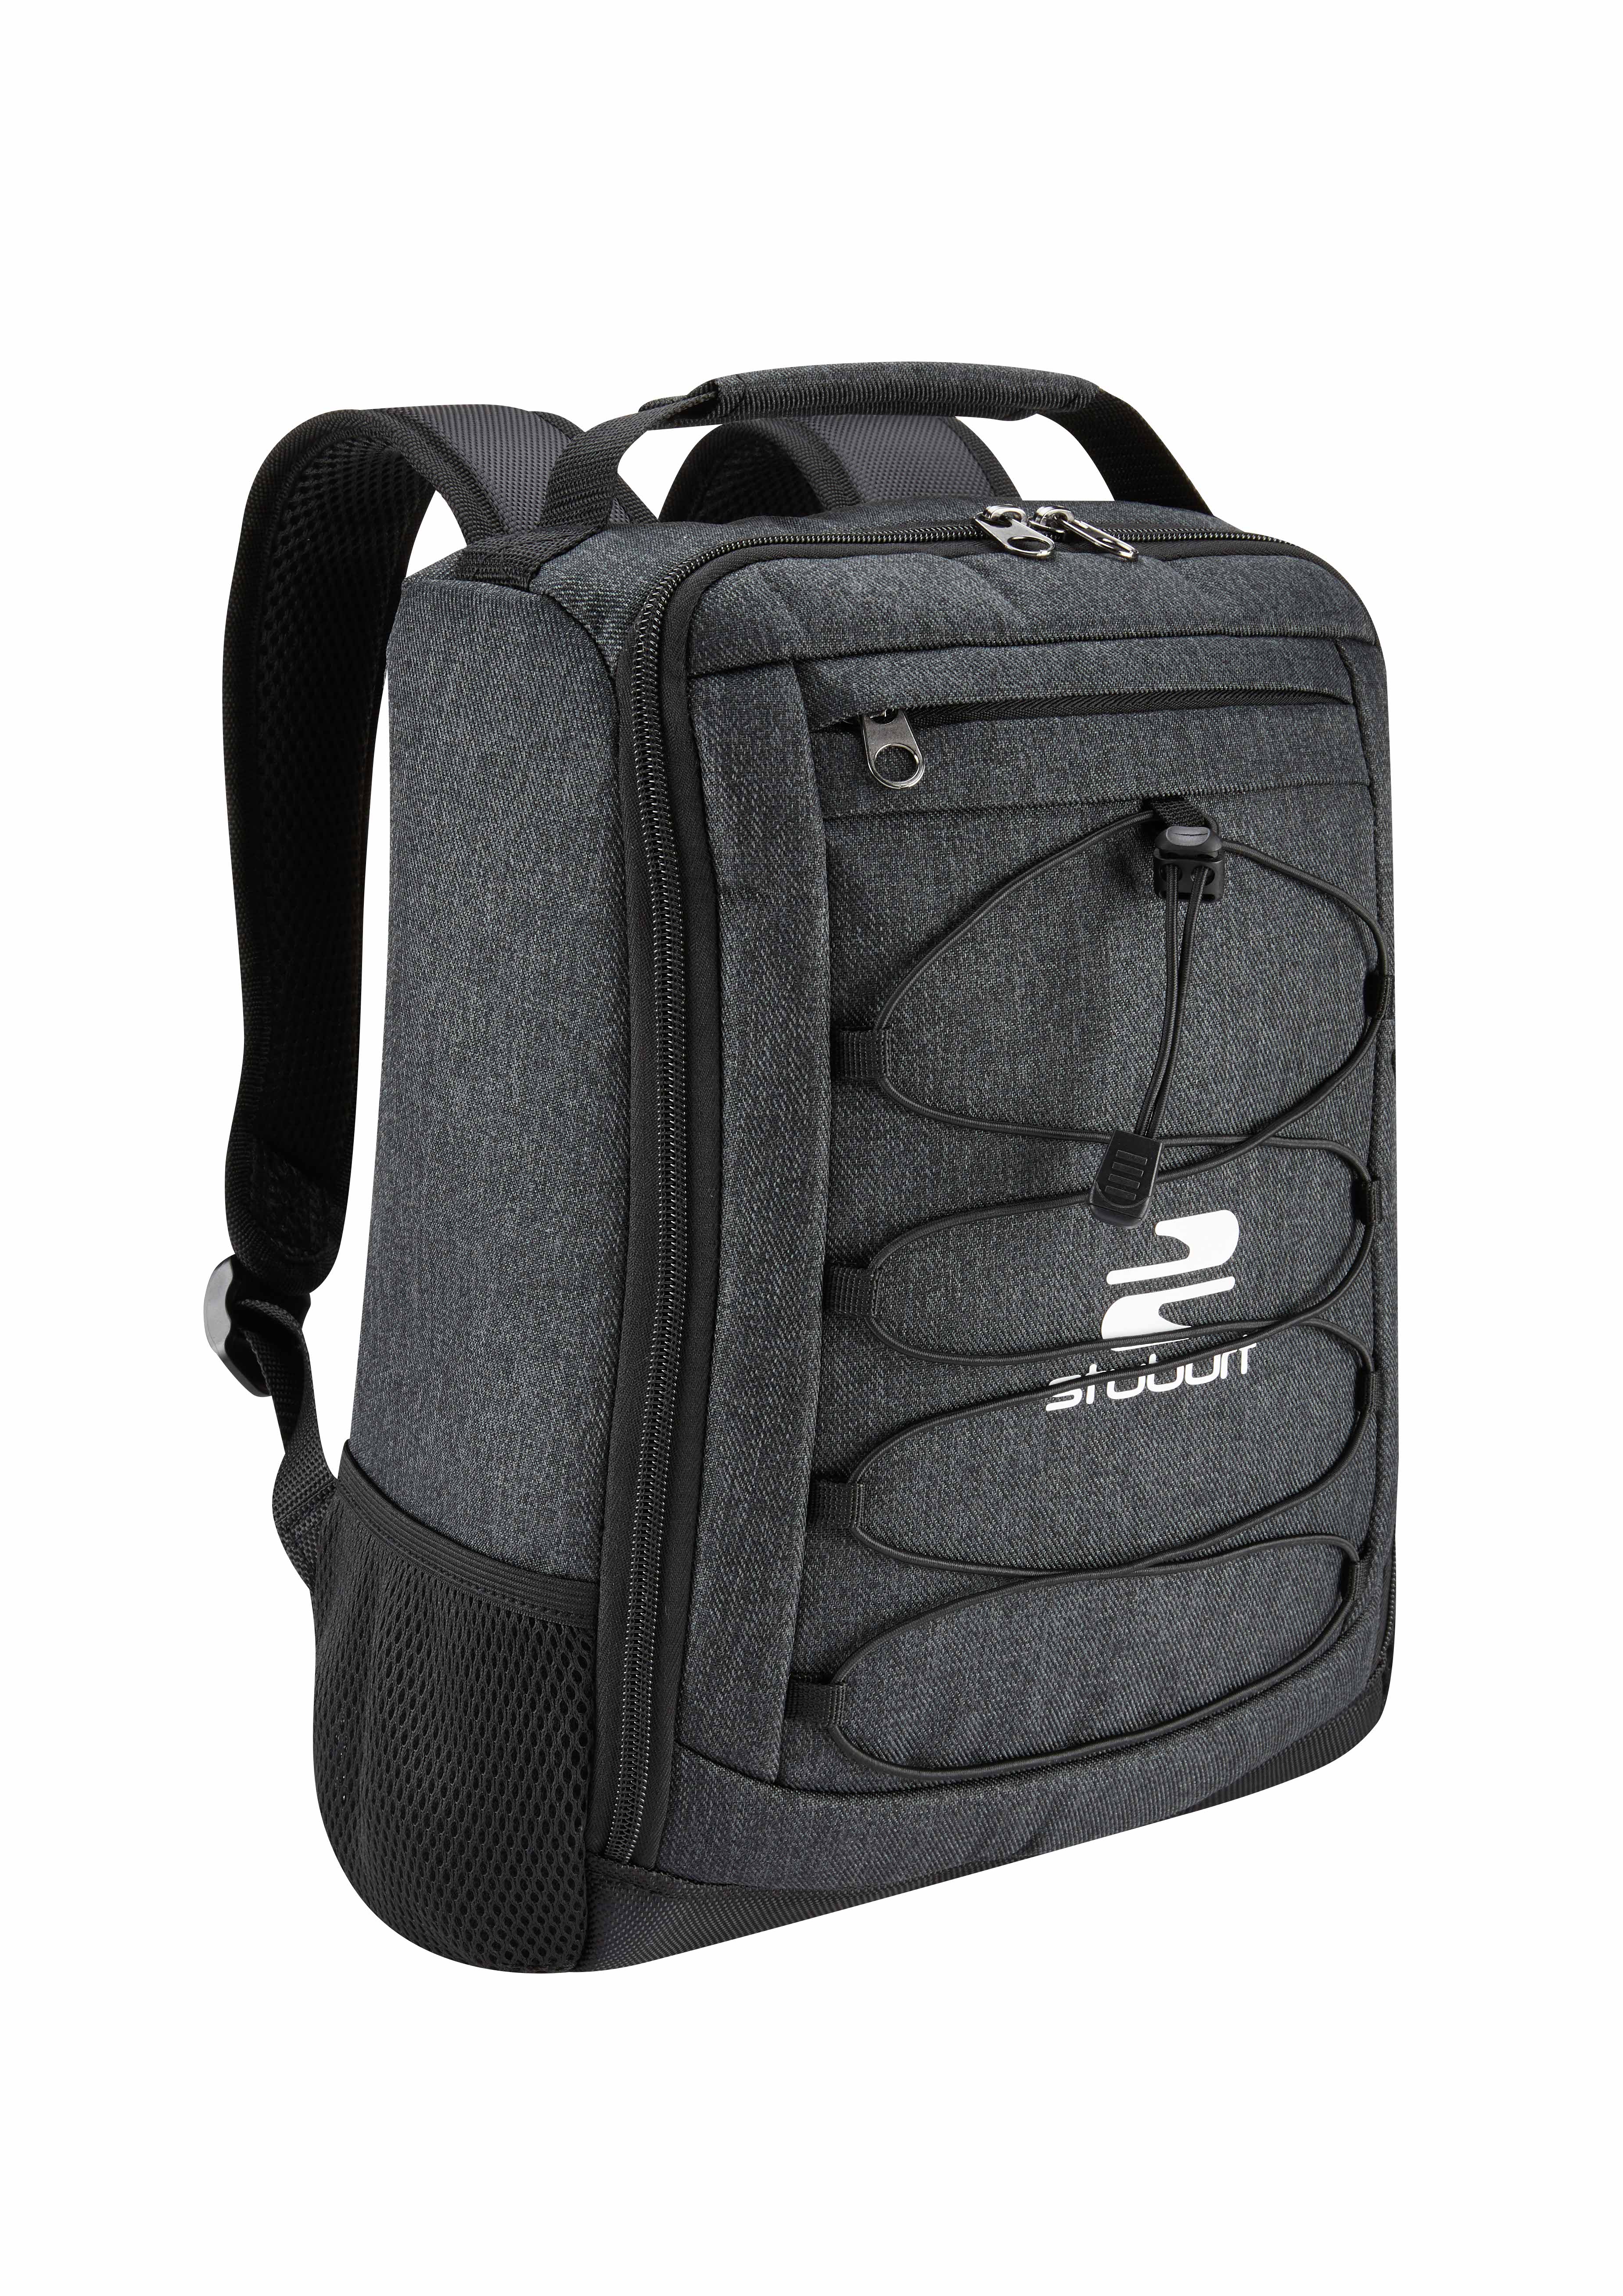 Redstart Shoe Backpack